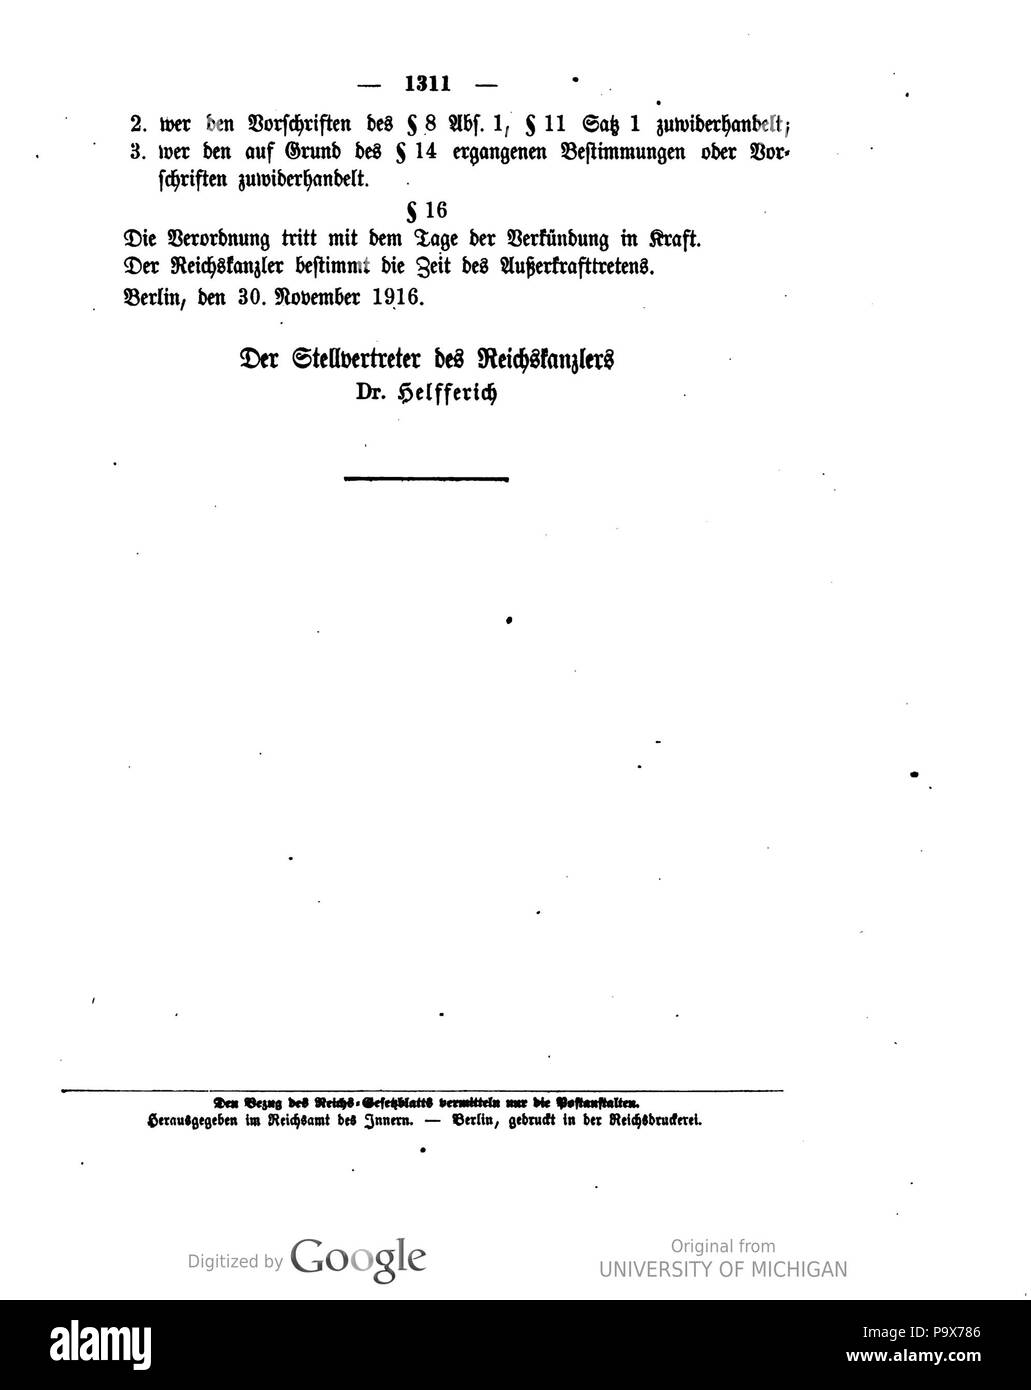 469 Deutsches Reichsgesetzblatt 1916 270 1311 Foto Stock